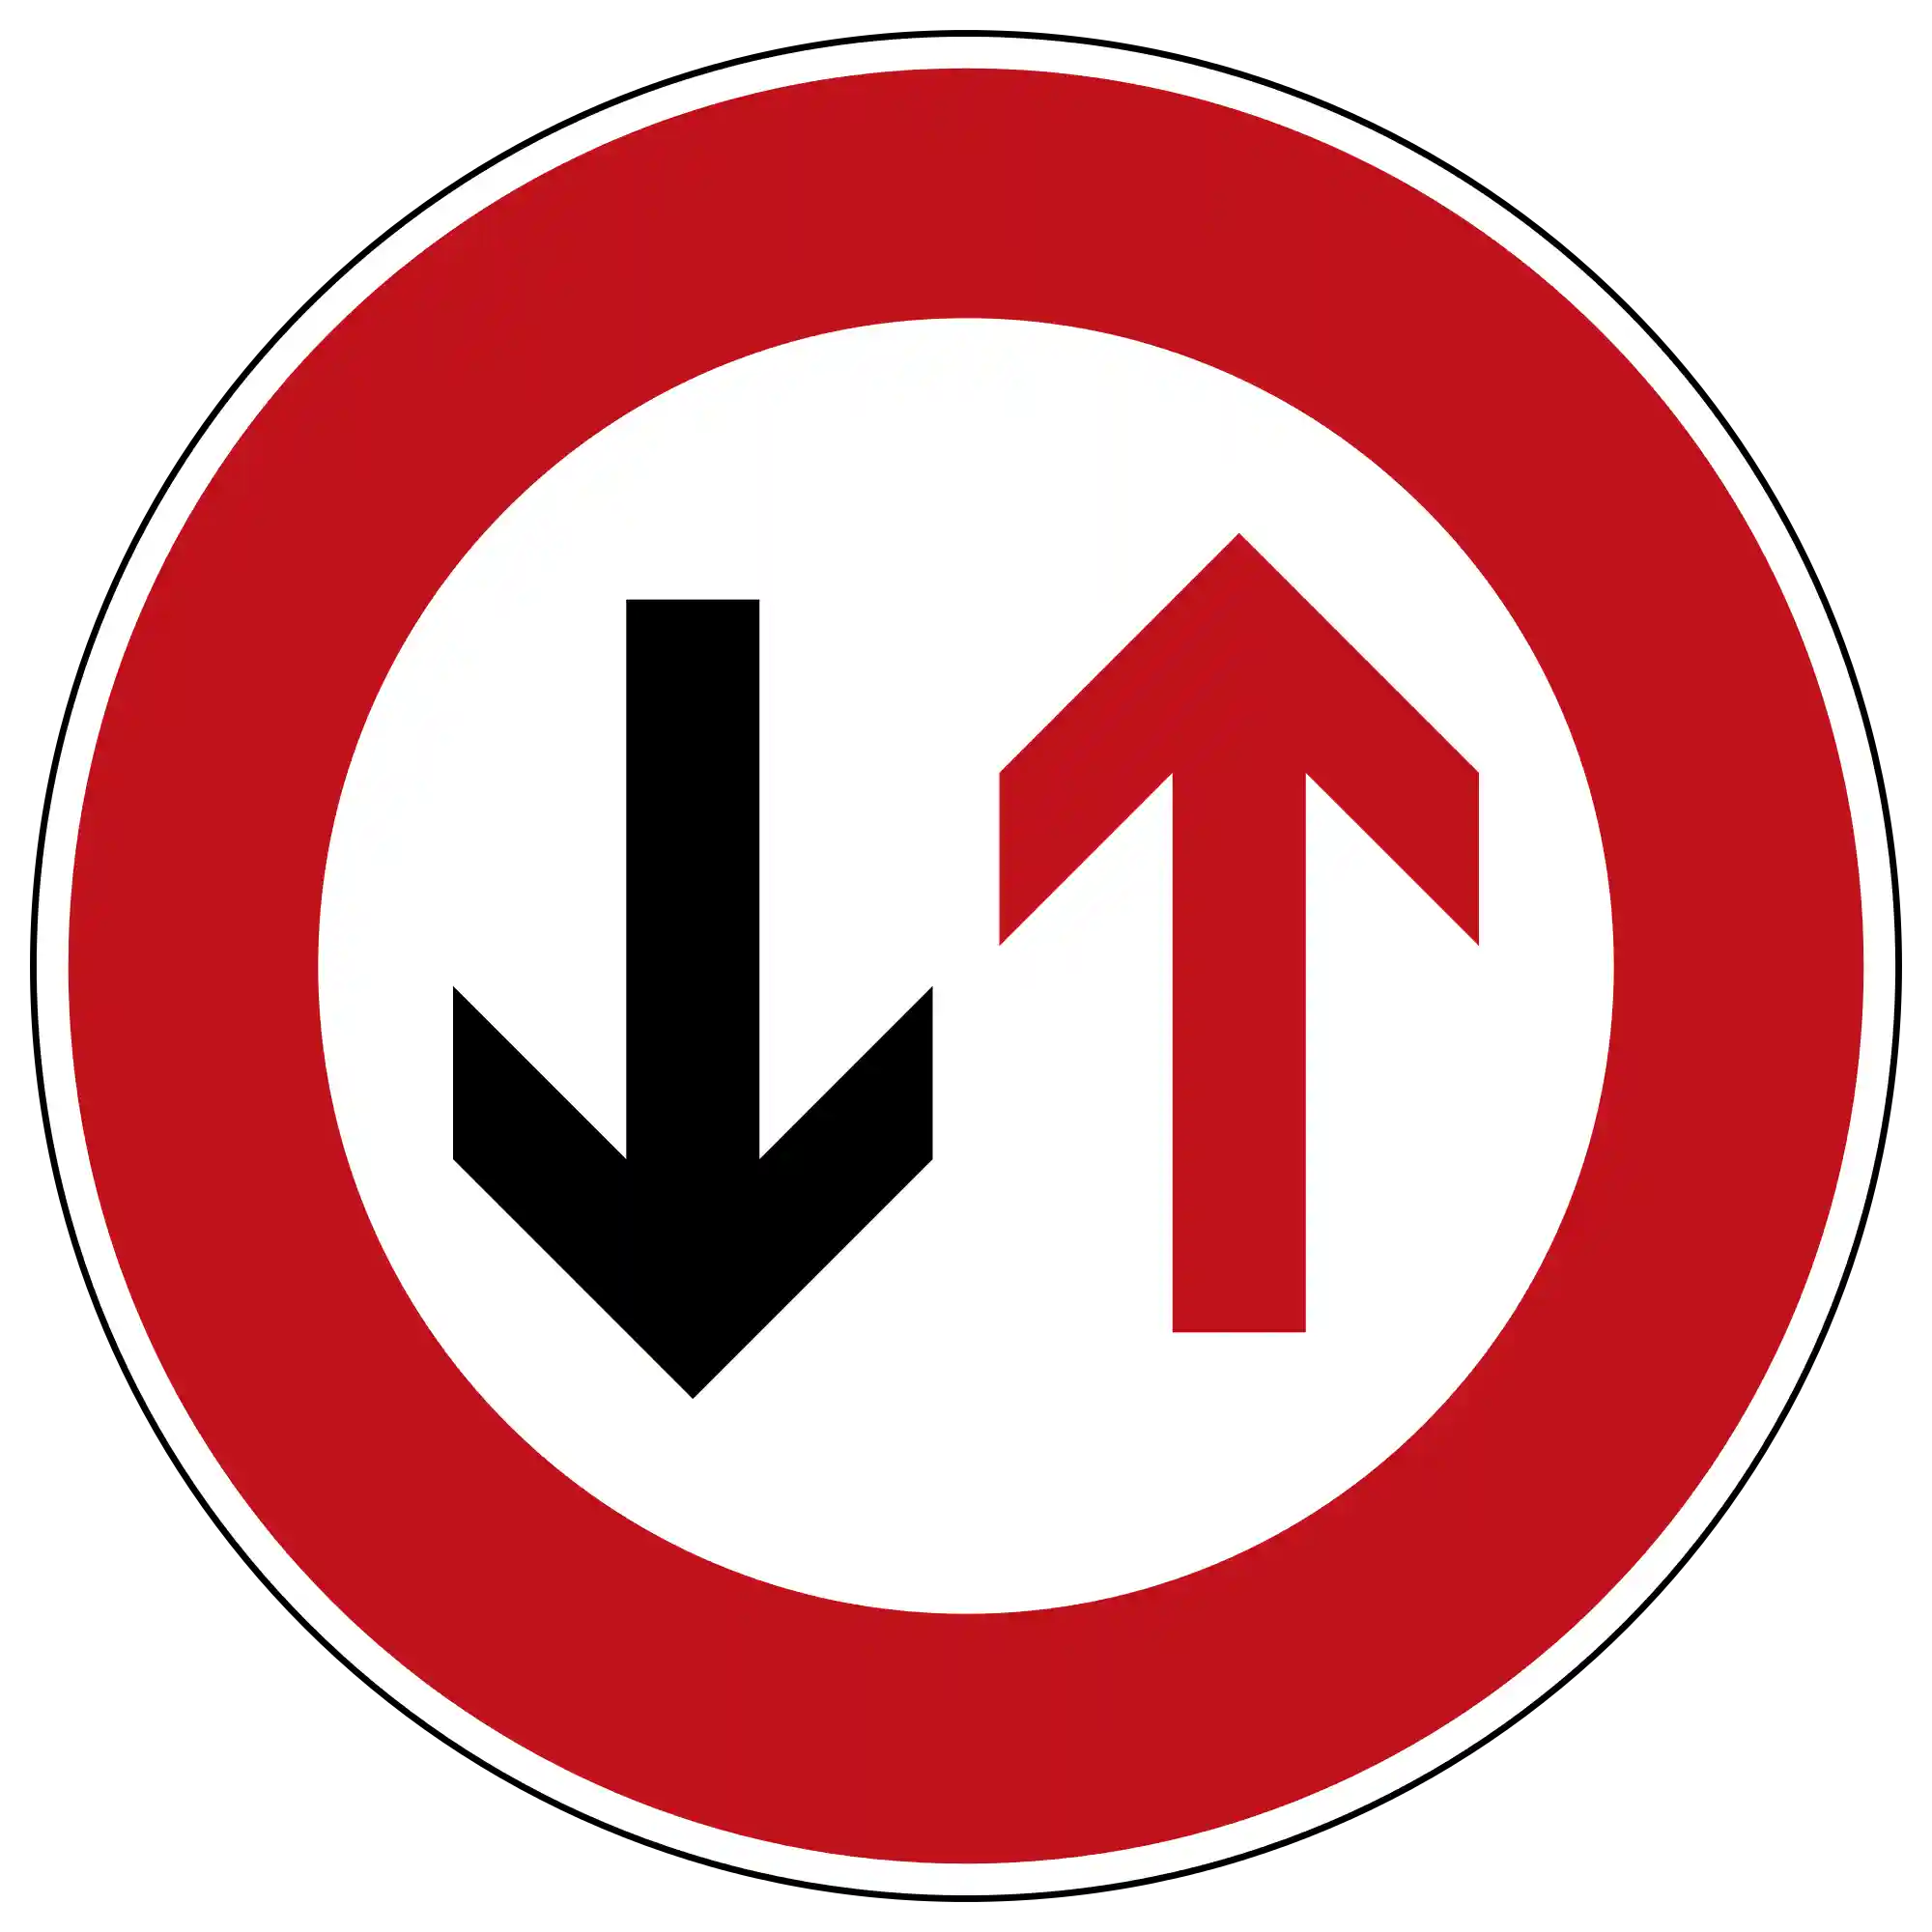 Verkehrssituation oder Verkehrszeichen